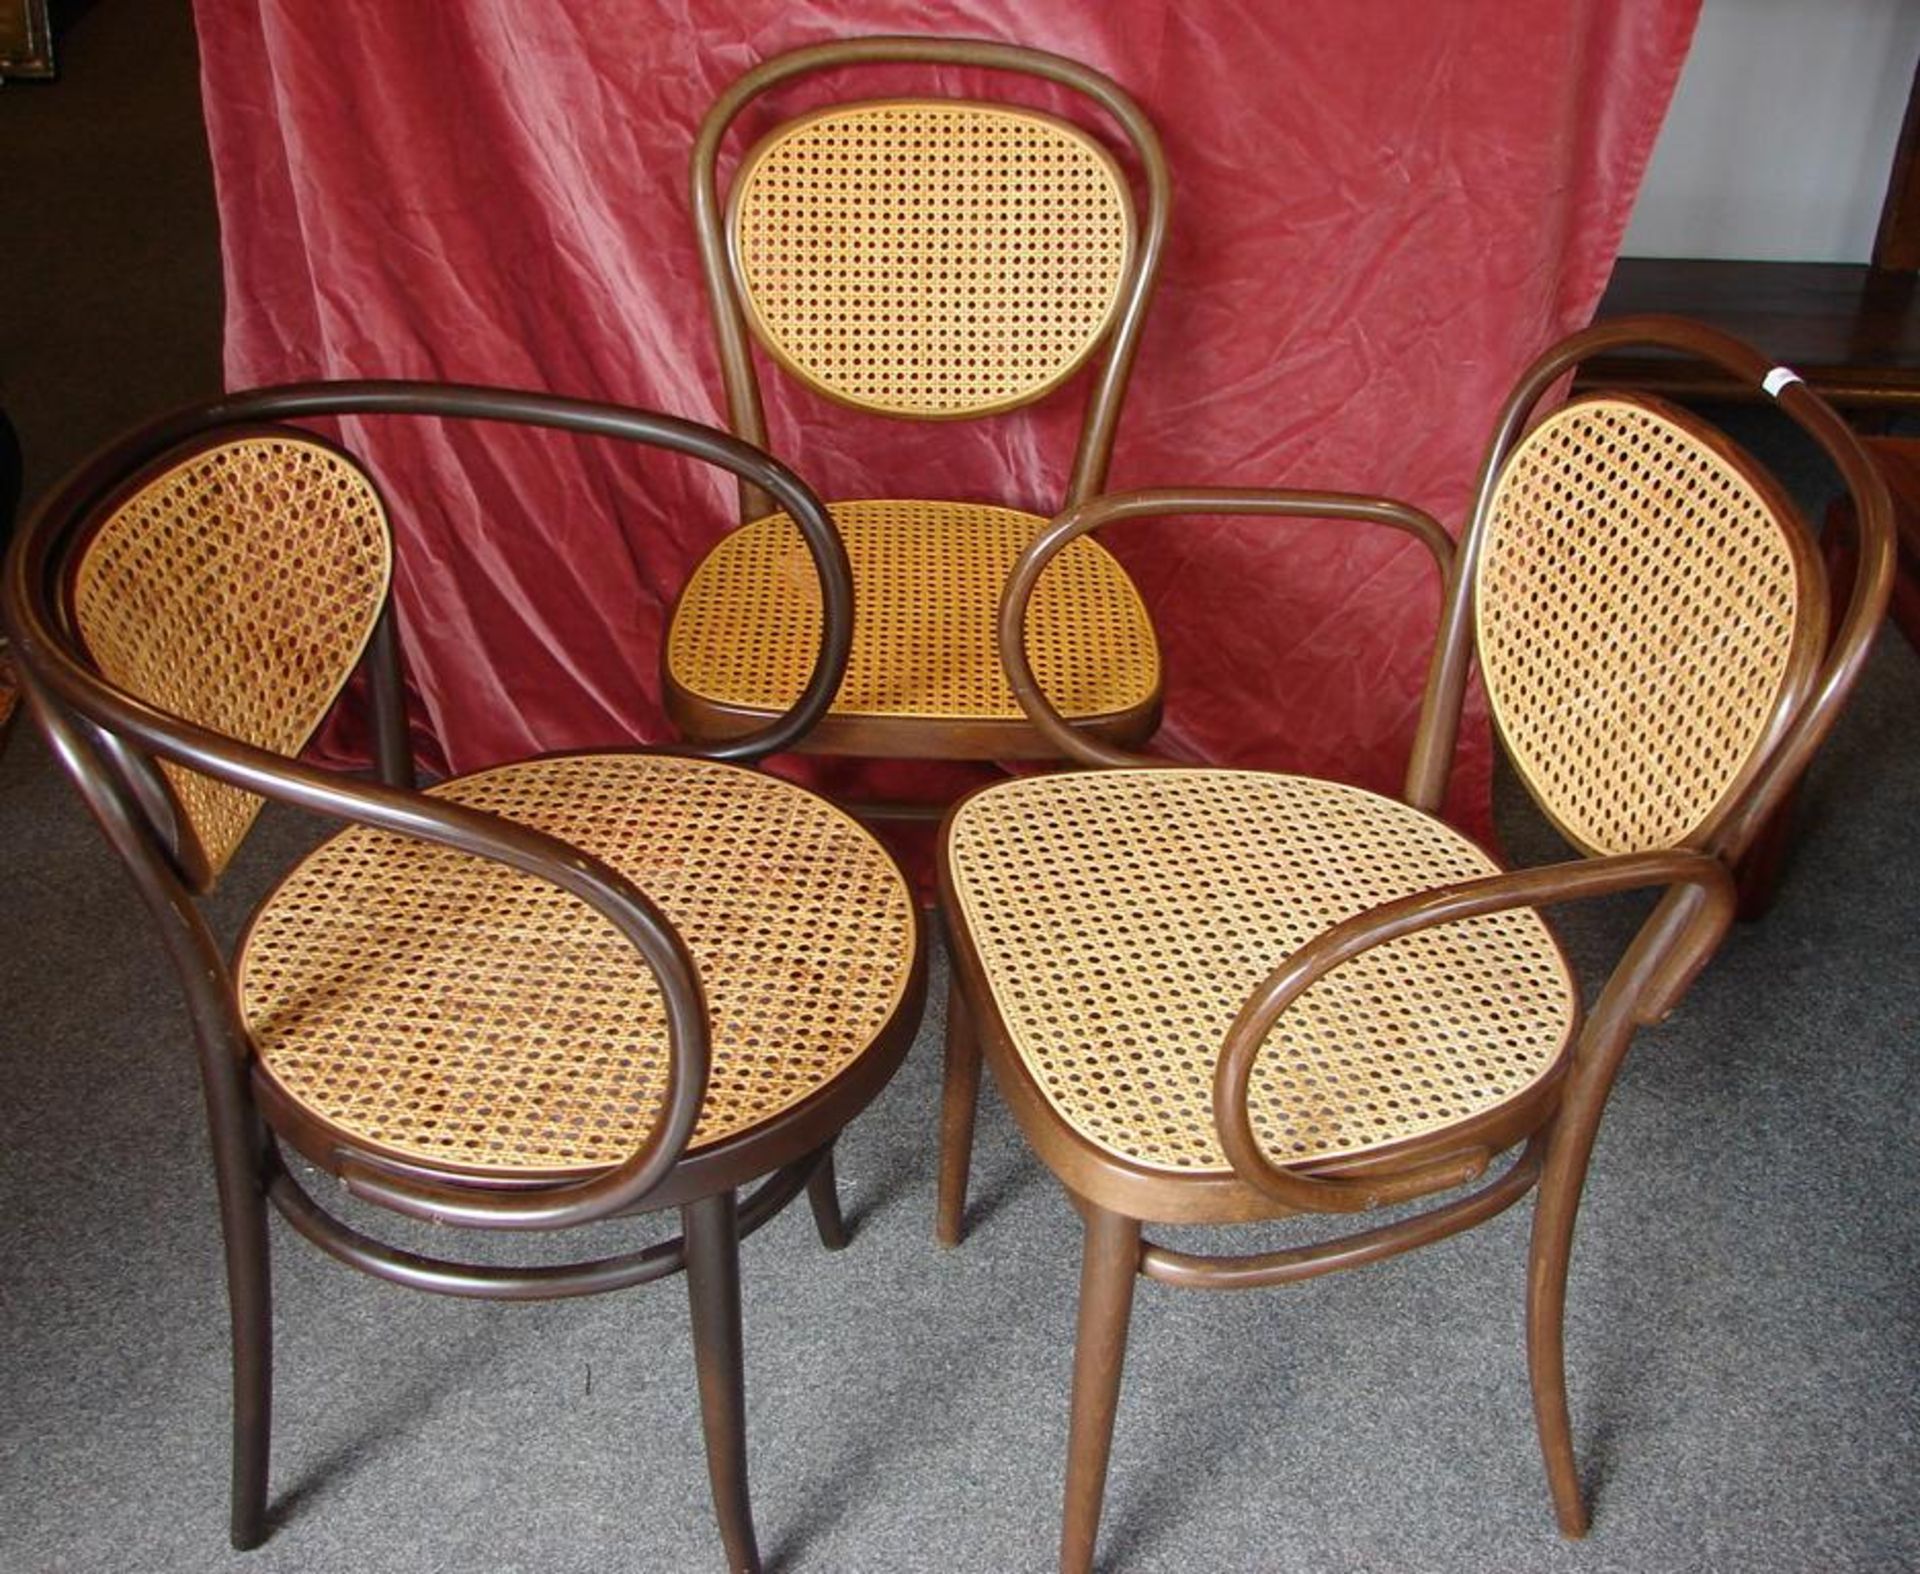 7 Thonet Stühle, verschiedene Ausführungen, mit- und ohne Armlehnen- - -22.00 % buyer's premium on